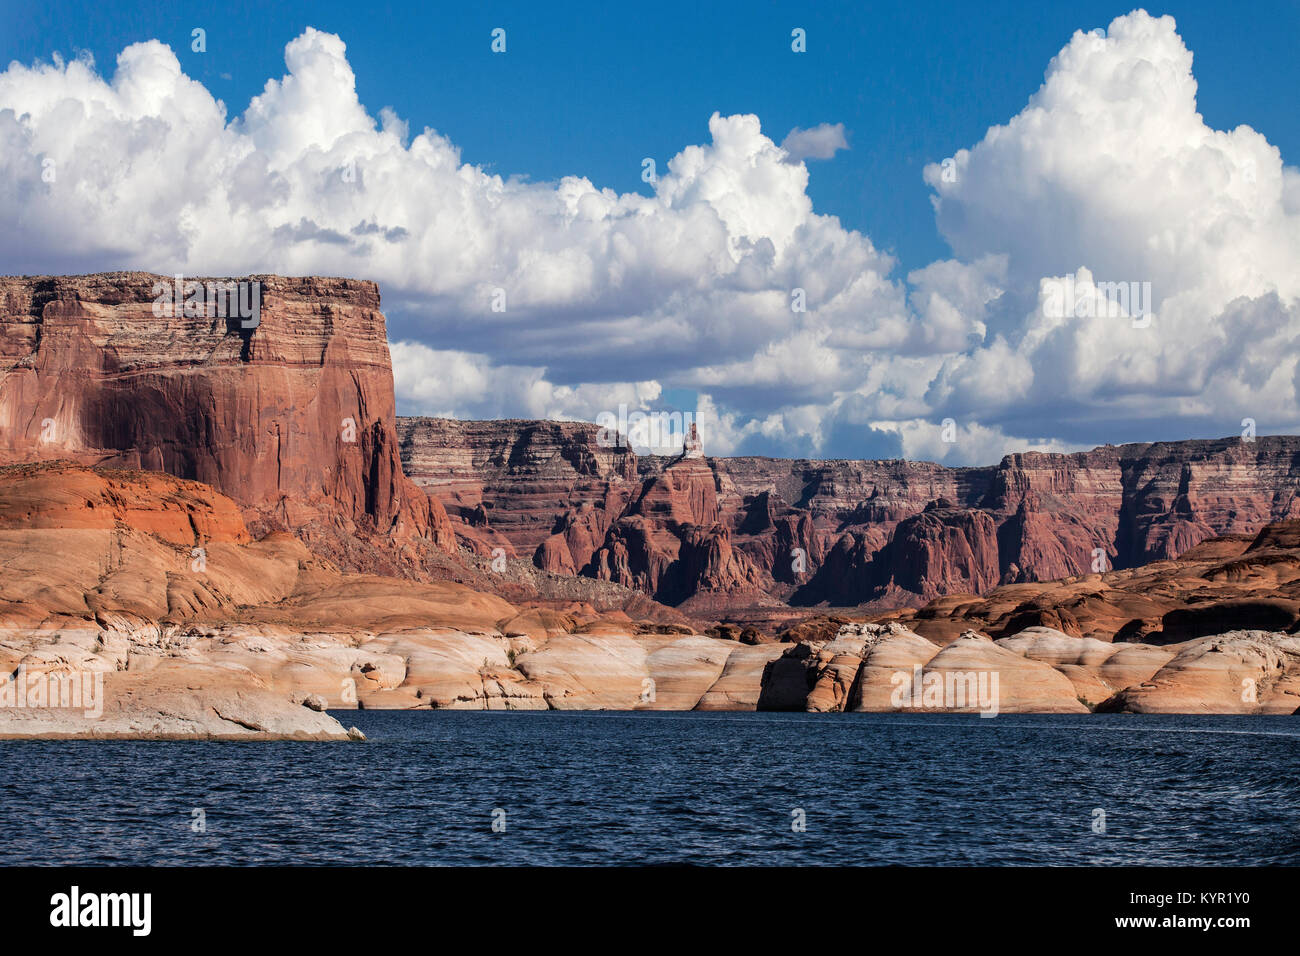 Arenaria robusto buttes allineate lungo le sponde del lago Powell, Glen Canyon National Recreation Area, Arizona e Utah, Stati Uniti d'America Foto Stock